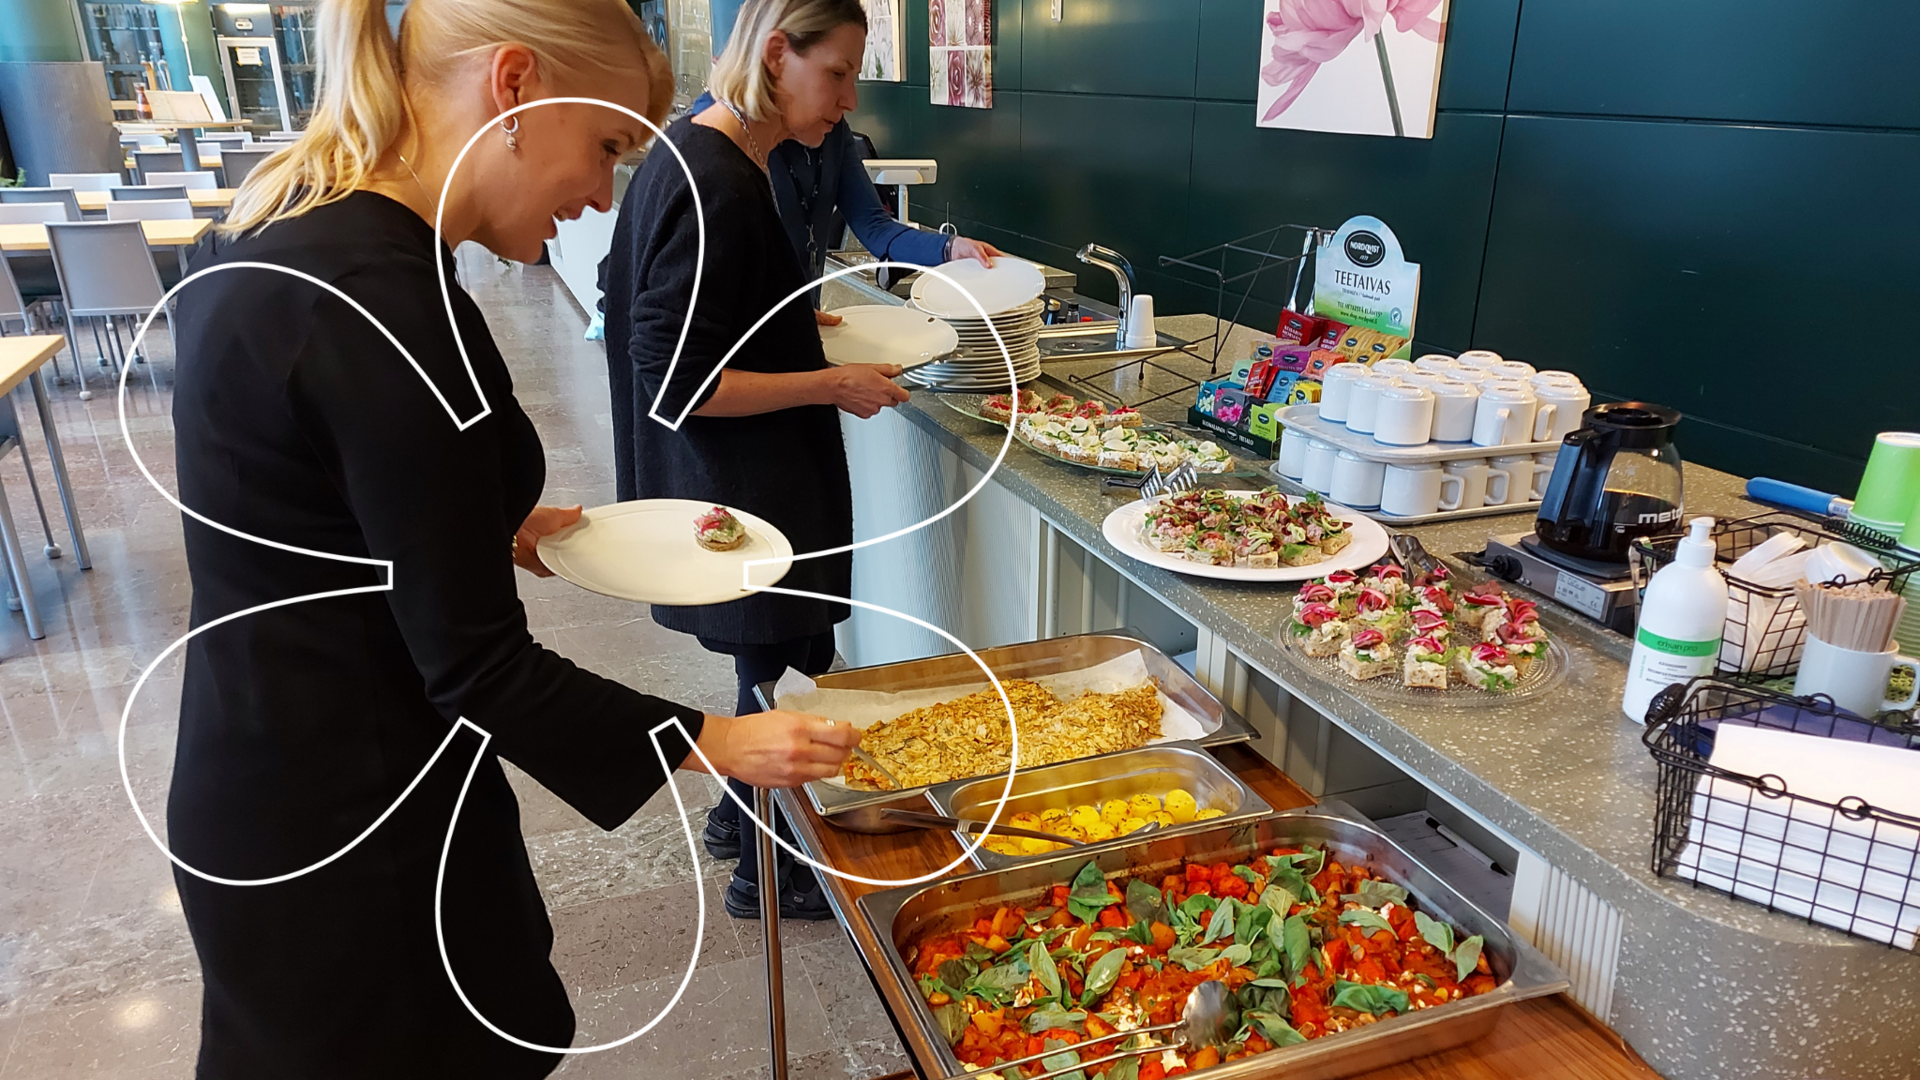 Kaupunginjohtaja Laura Leppänen ottamassa linjaston päähän aseteltuja ruokia lautaselle, taustalla muita henkilöitä ottamassa ruokaa. Kuvan päällä Onnellinen aurinko -elementti.